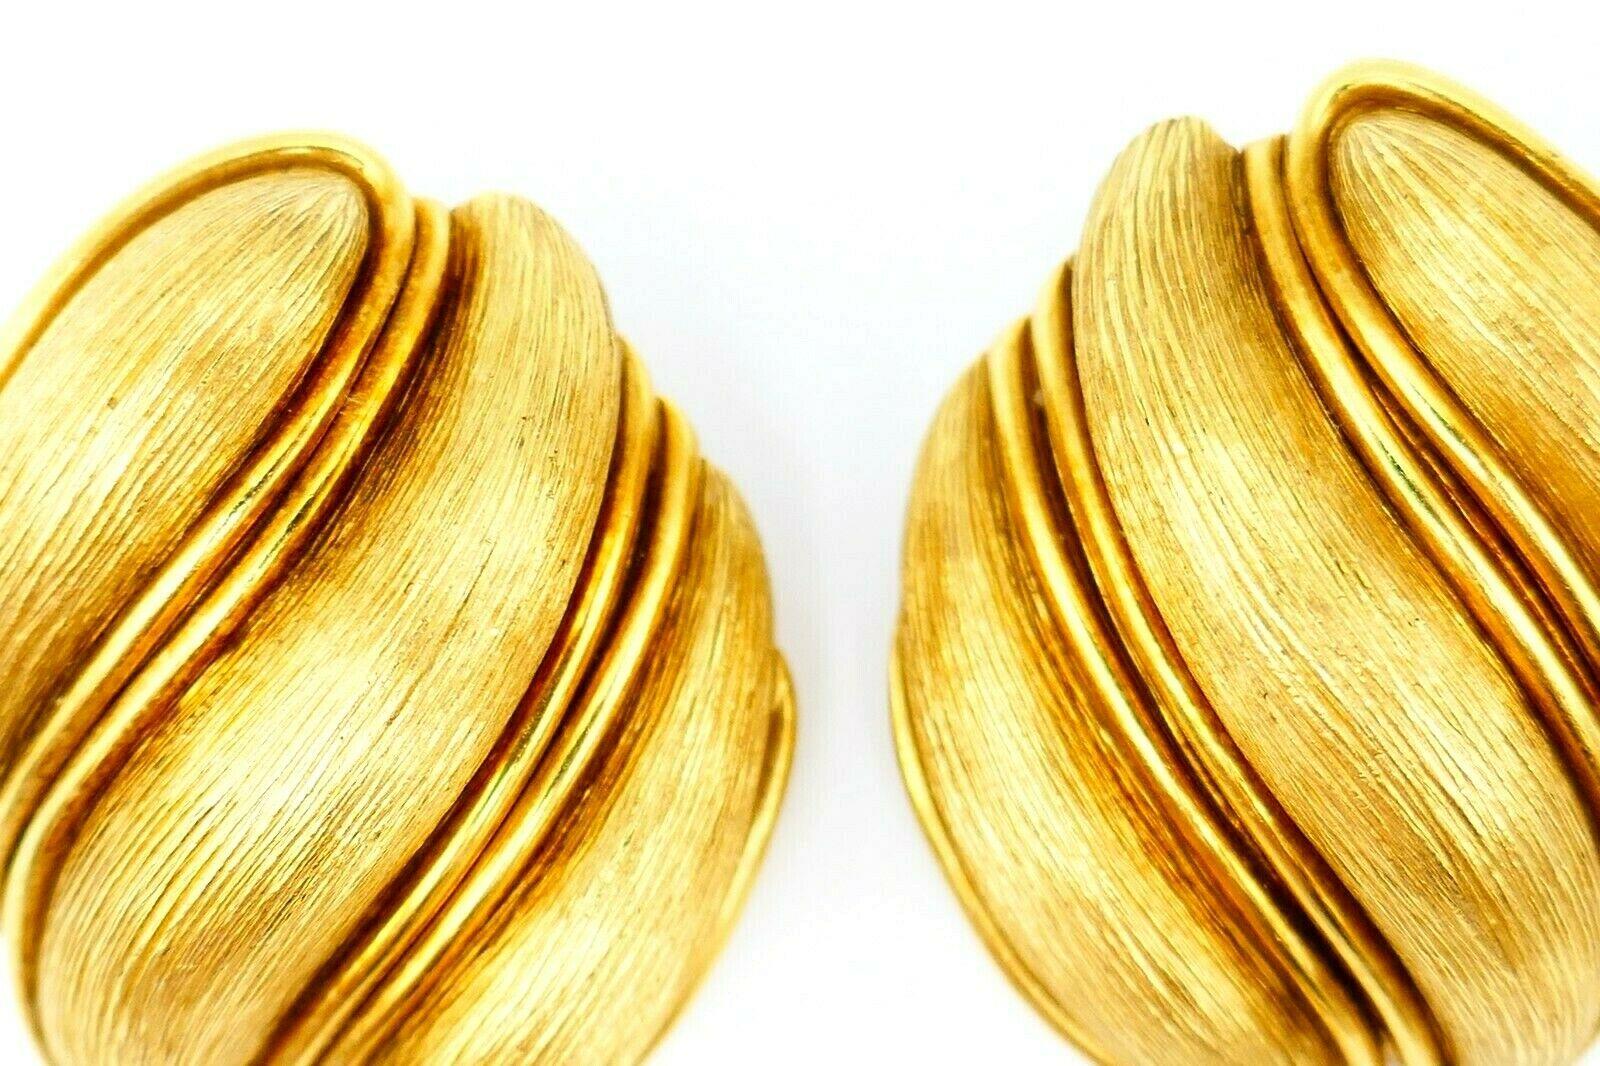 Ein wunderschönes Paar Ohrringe von Henry Dunay zum Anstecken. Hergestellt aus strukturiertem 18k Gelbgold.
Gestempelt mit der Dunay-Herstellermarke und einem Feingehaltsstempel für 18 Karat Gold. 
Abmessungen: 1 1/8